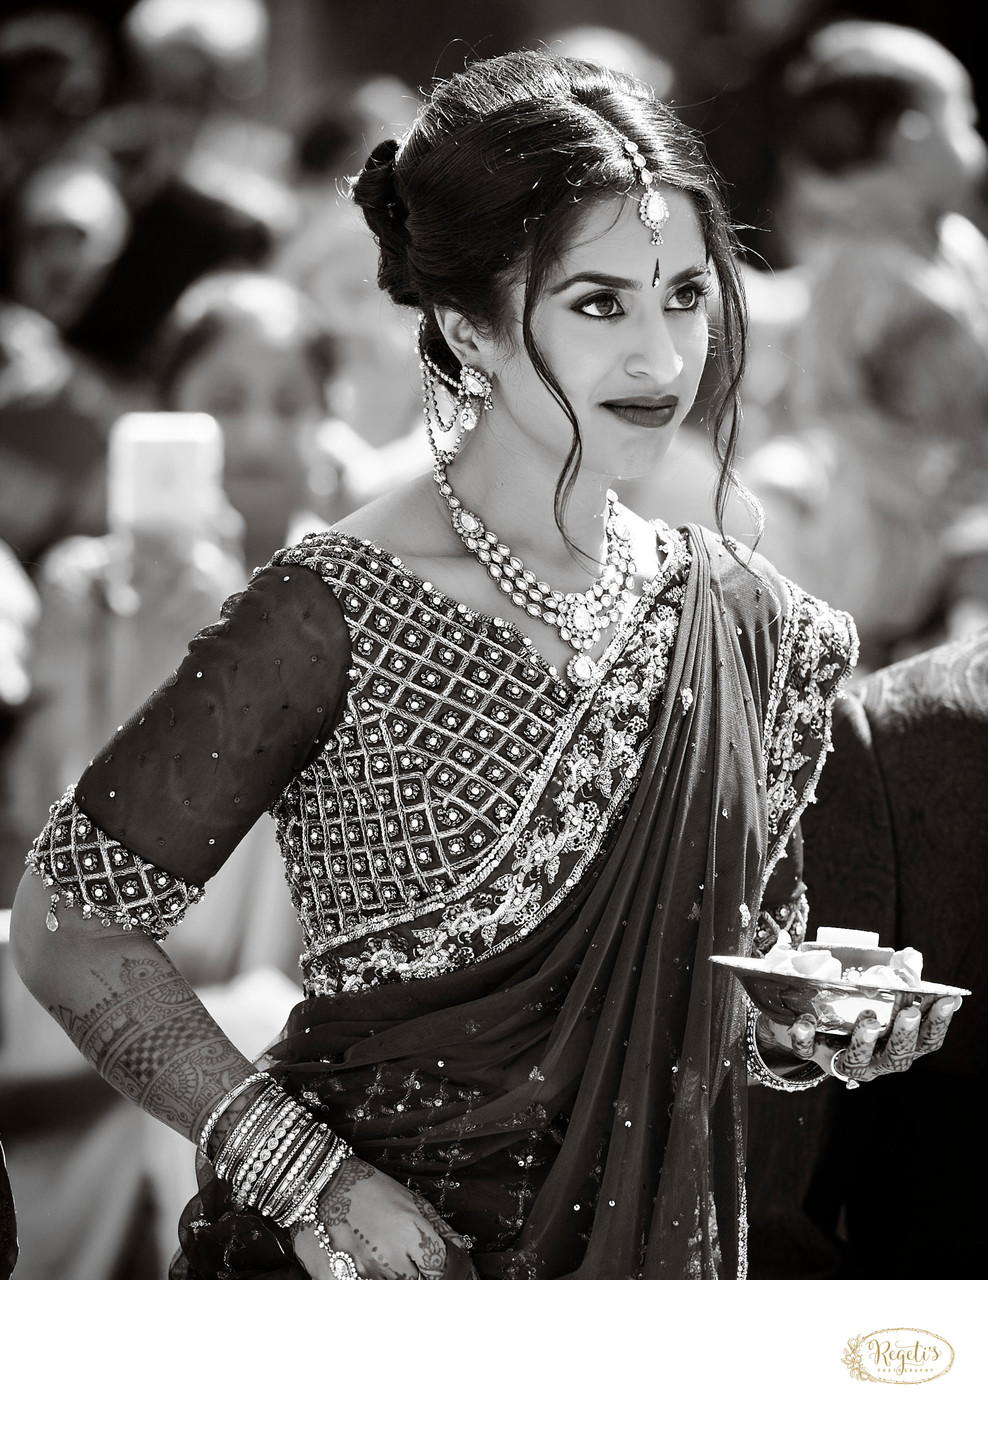 South Indian Bride in a Sari. California Wedding